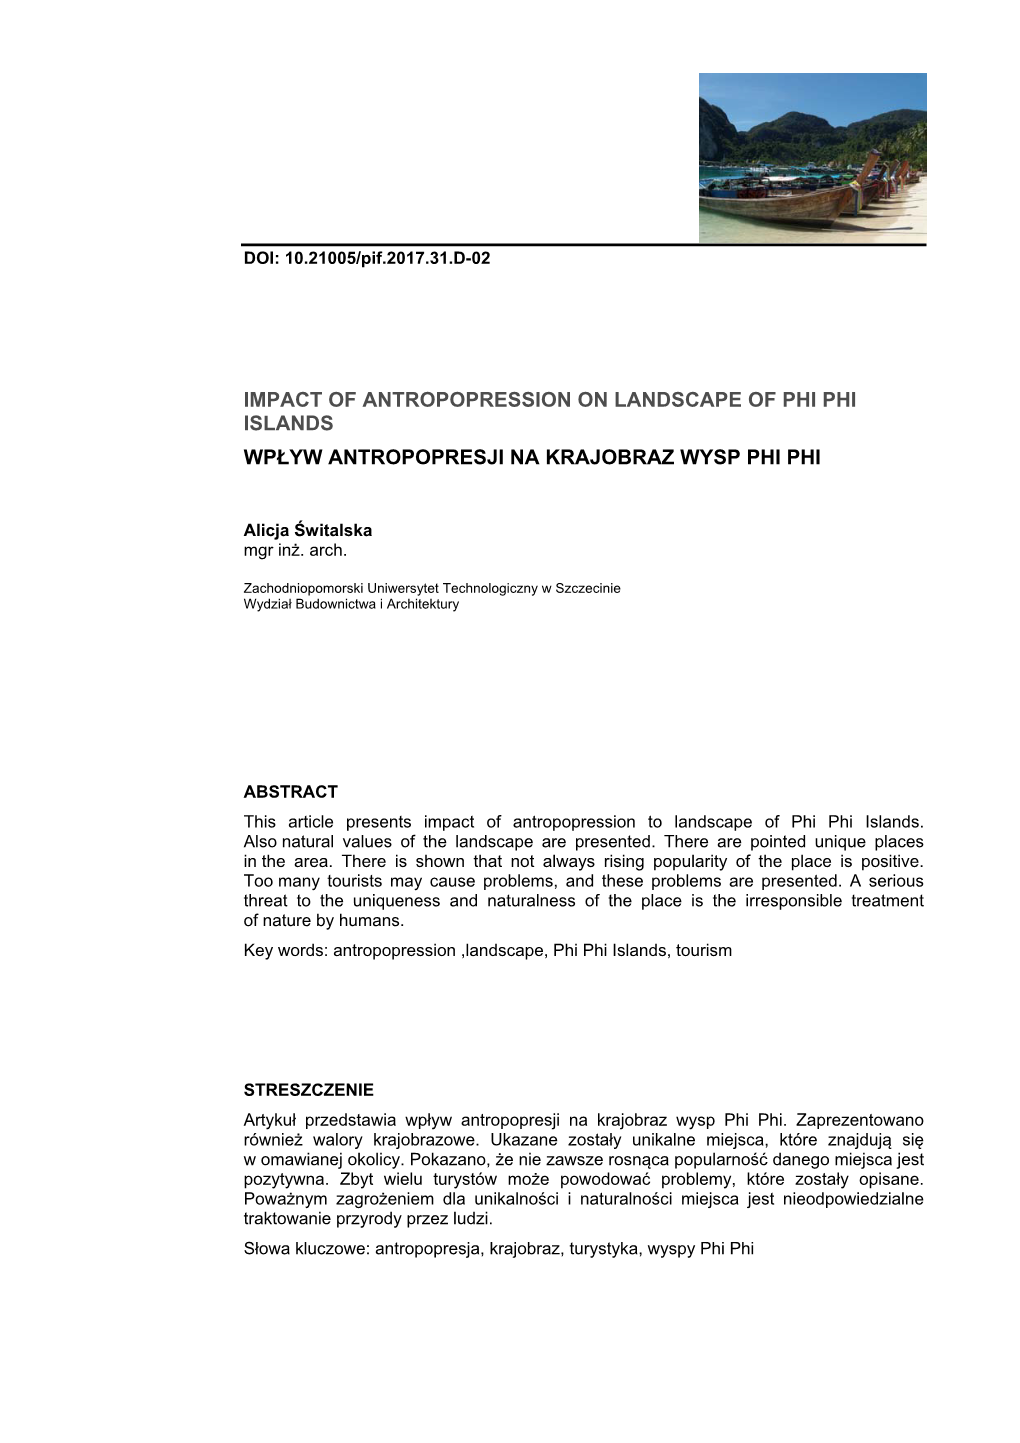 Impact of Antropopression on Landscape of Phi Phi Islands Wpływ Antropopresji Na Krajobraz Wysp Phi Phi